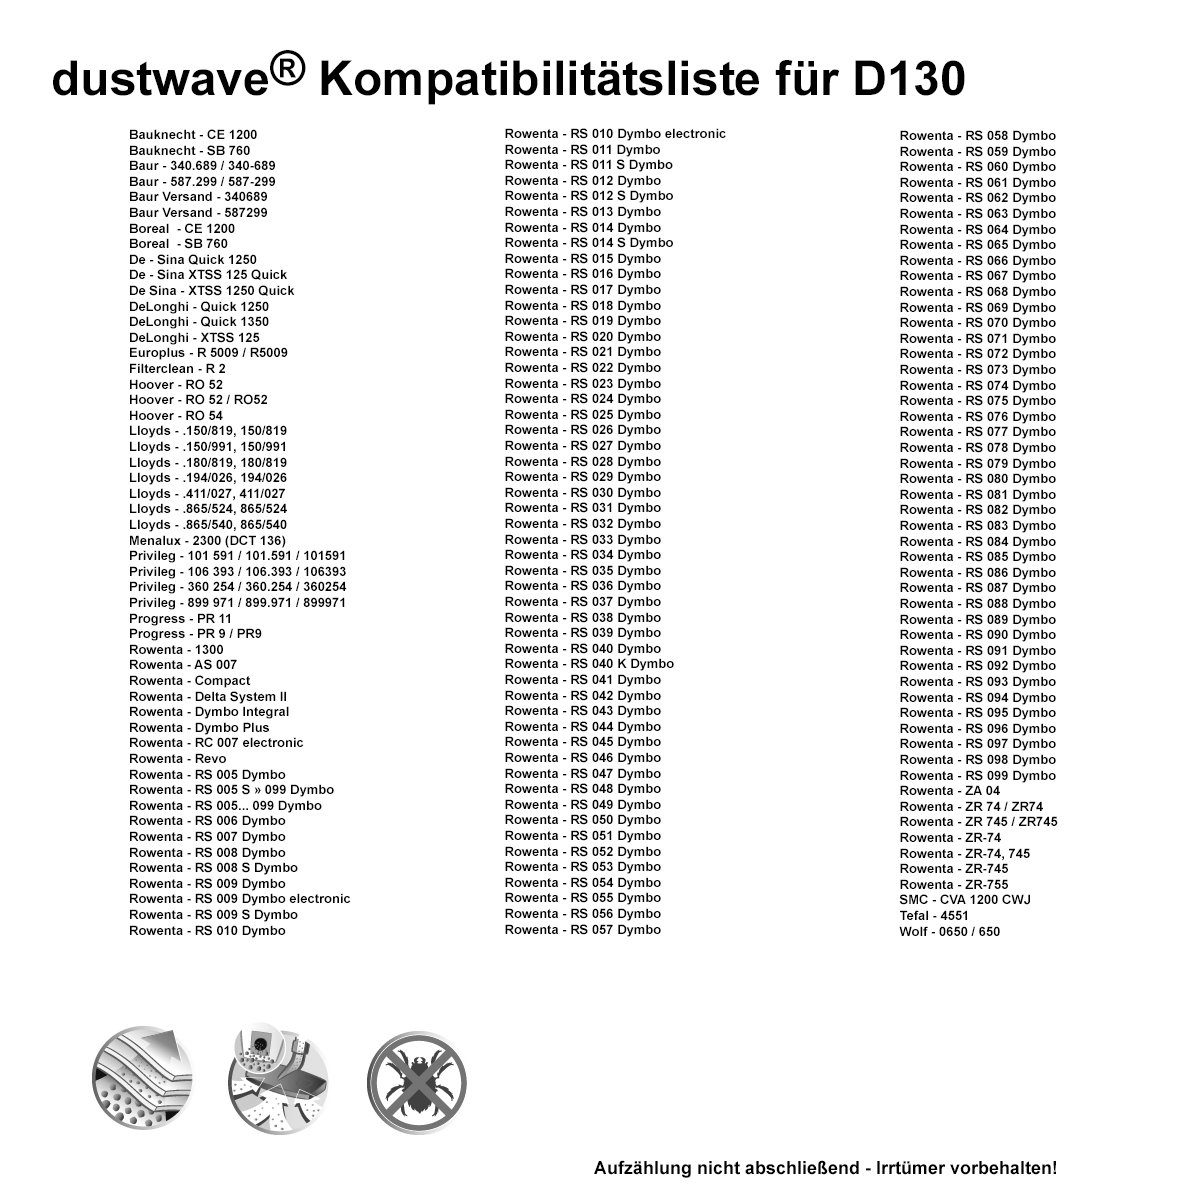 1 340-689, + Test-Set, Staubsaugerbeutel St., 1 passend (ca. Dustwave Baur Hepa-Filter 340.689 Test-Set, 1 Staubsaugerbeutel - 15x15cm für / zuschneidbar)